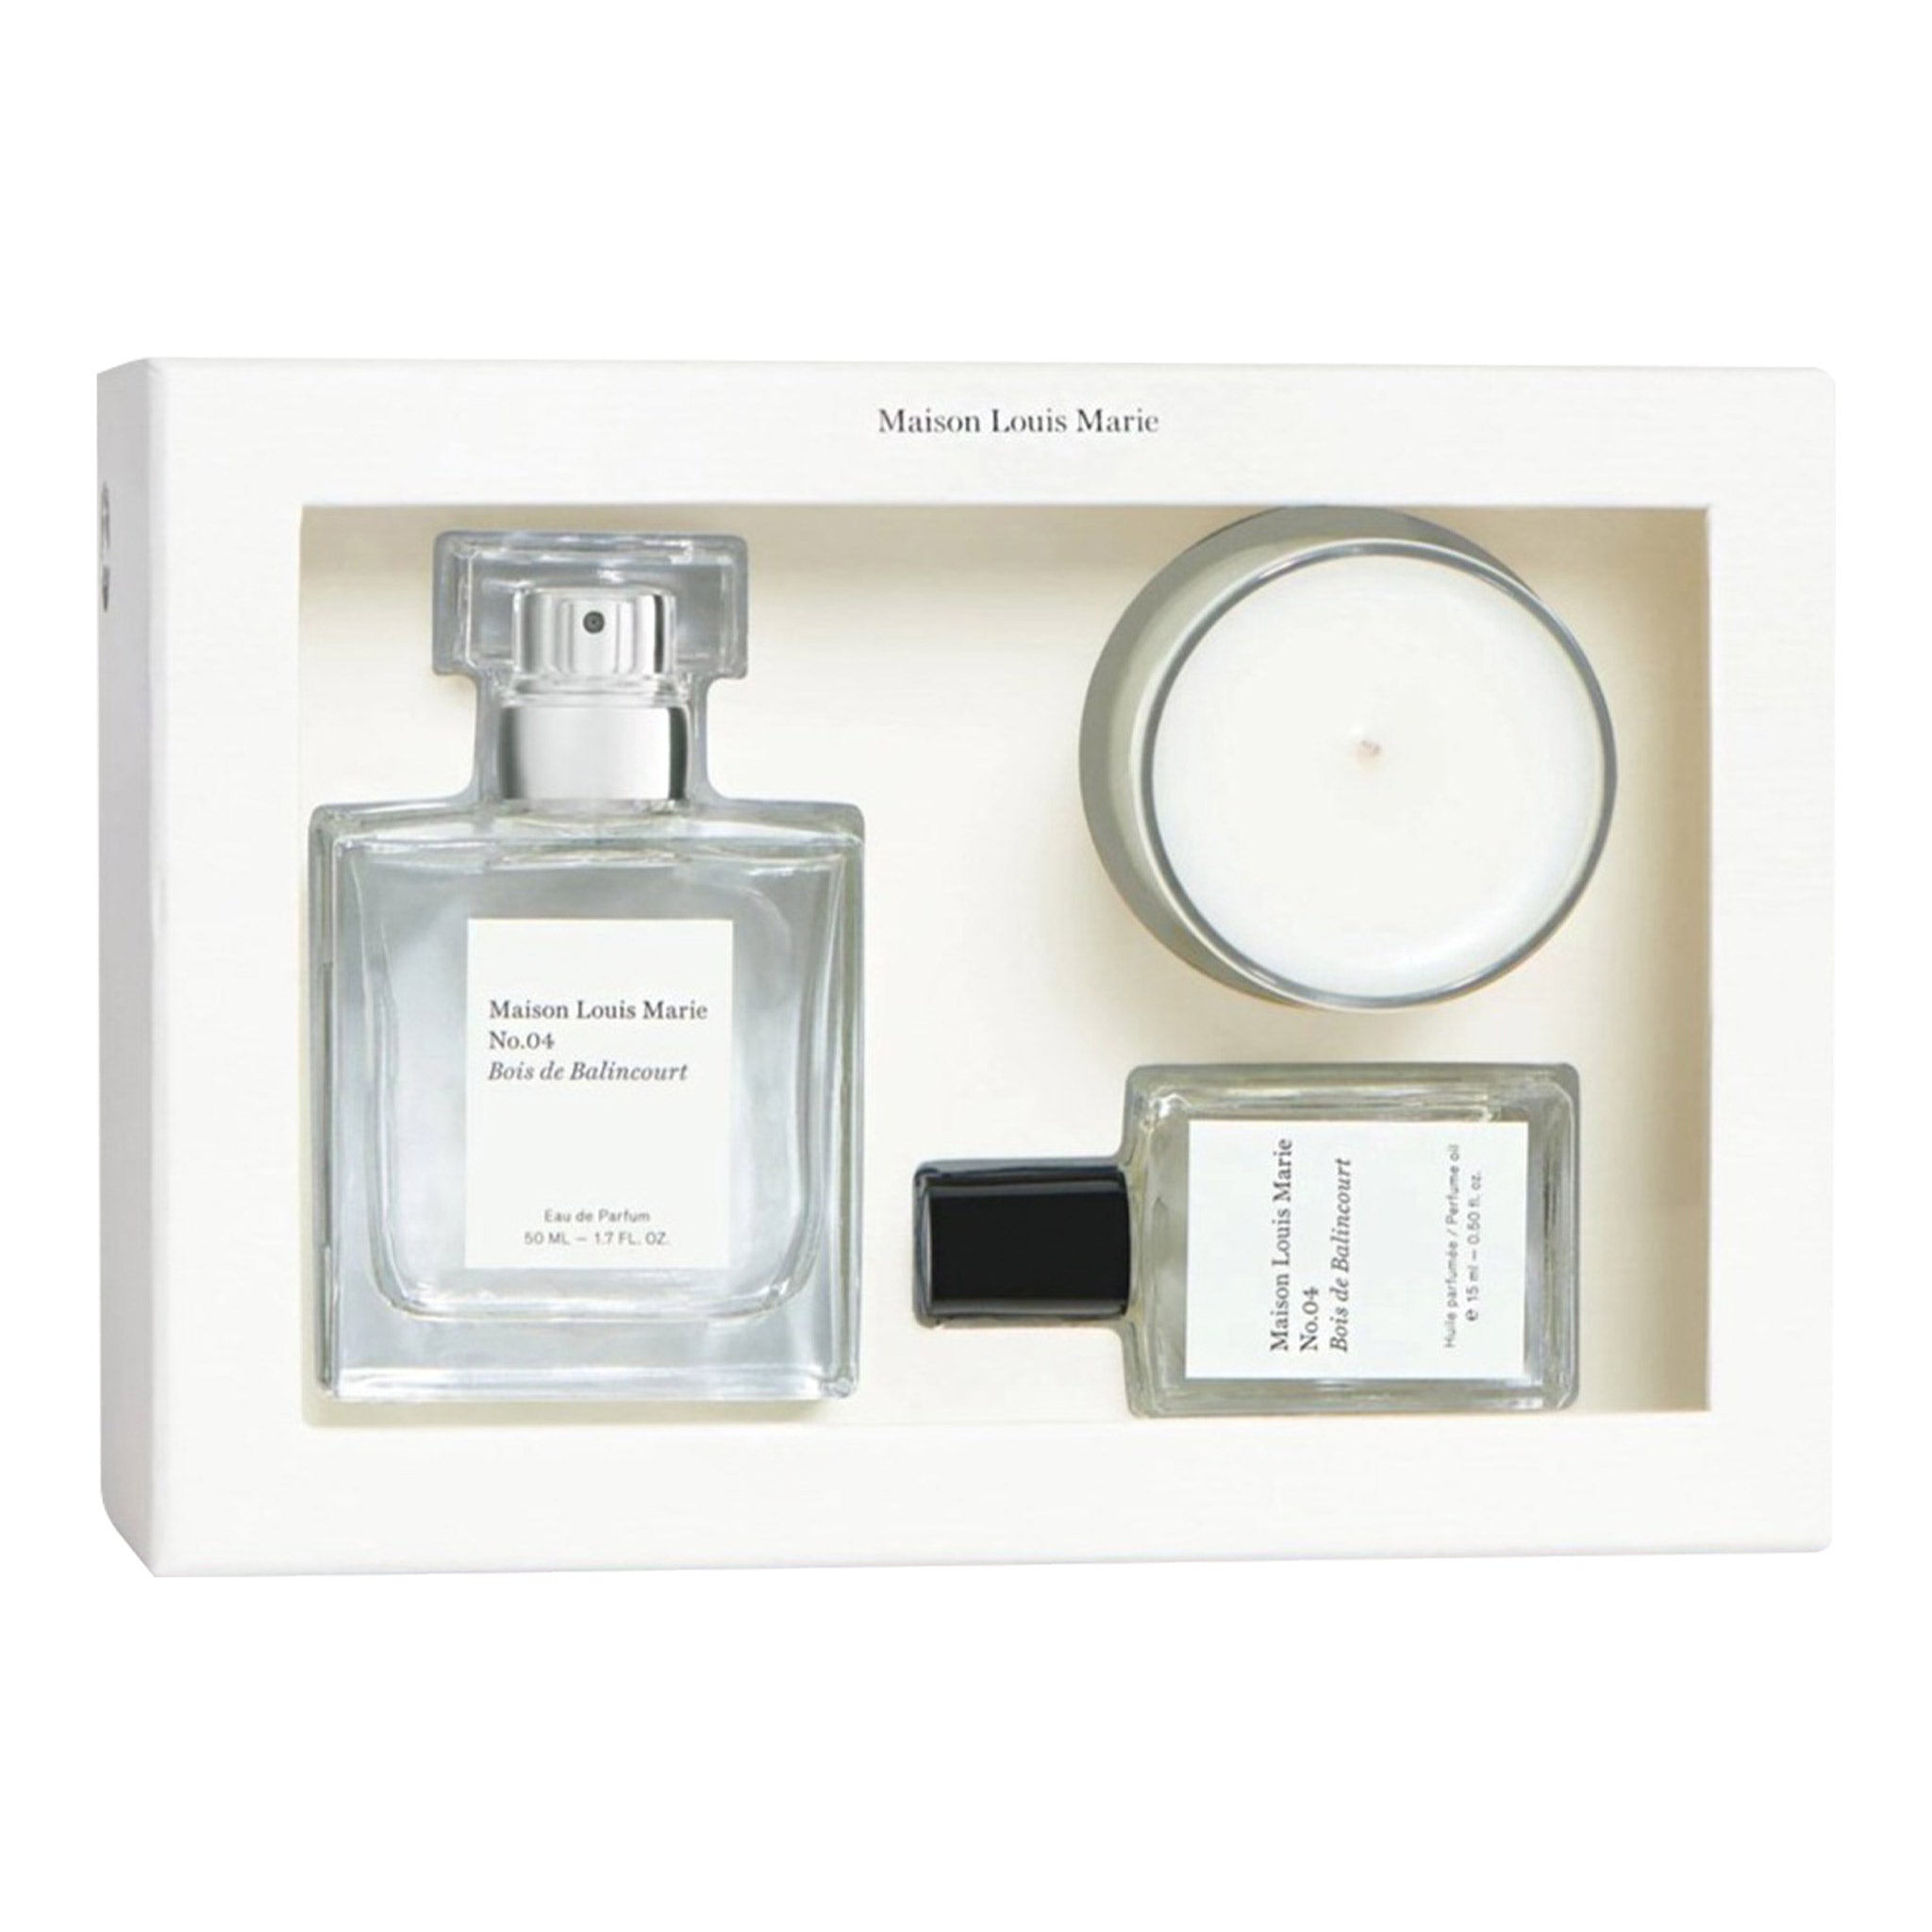  Maison Louis Marie - Natural Body + Hand Lotion, Luxury Clean  Beauty + Non-Toxic Fragrance (No.04 Bois de Balincourt, 8 fl oz